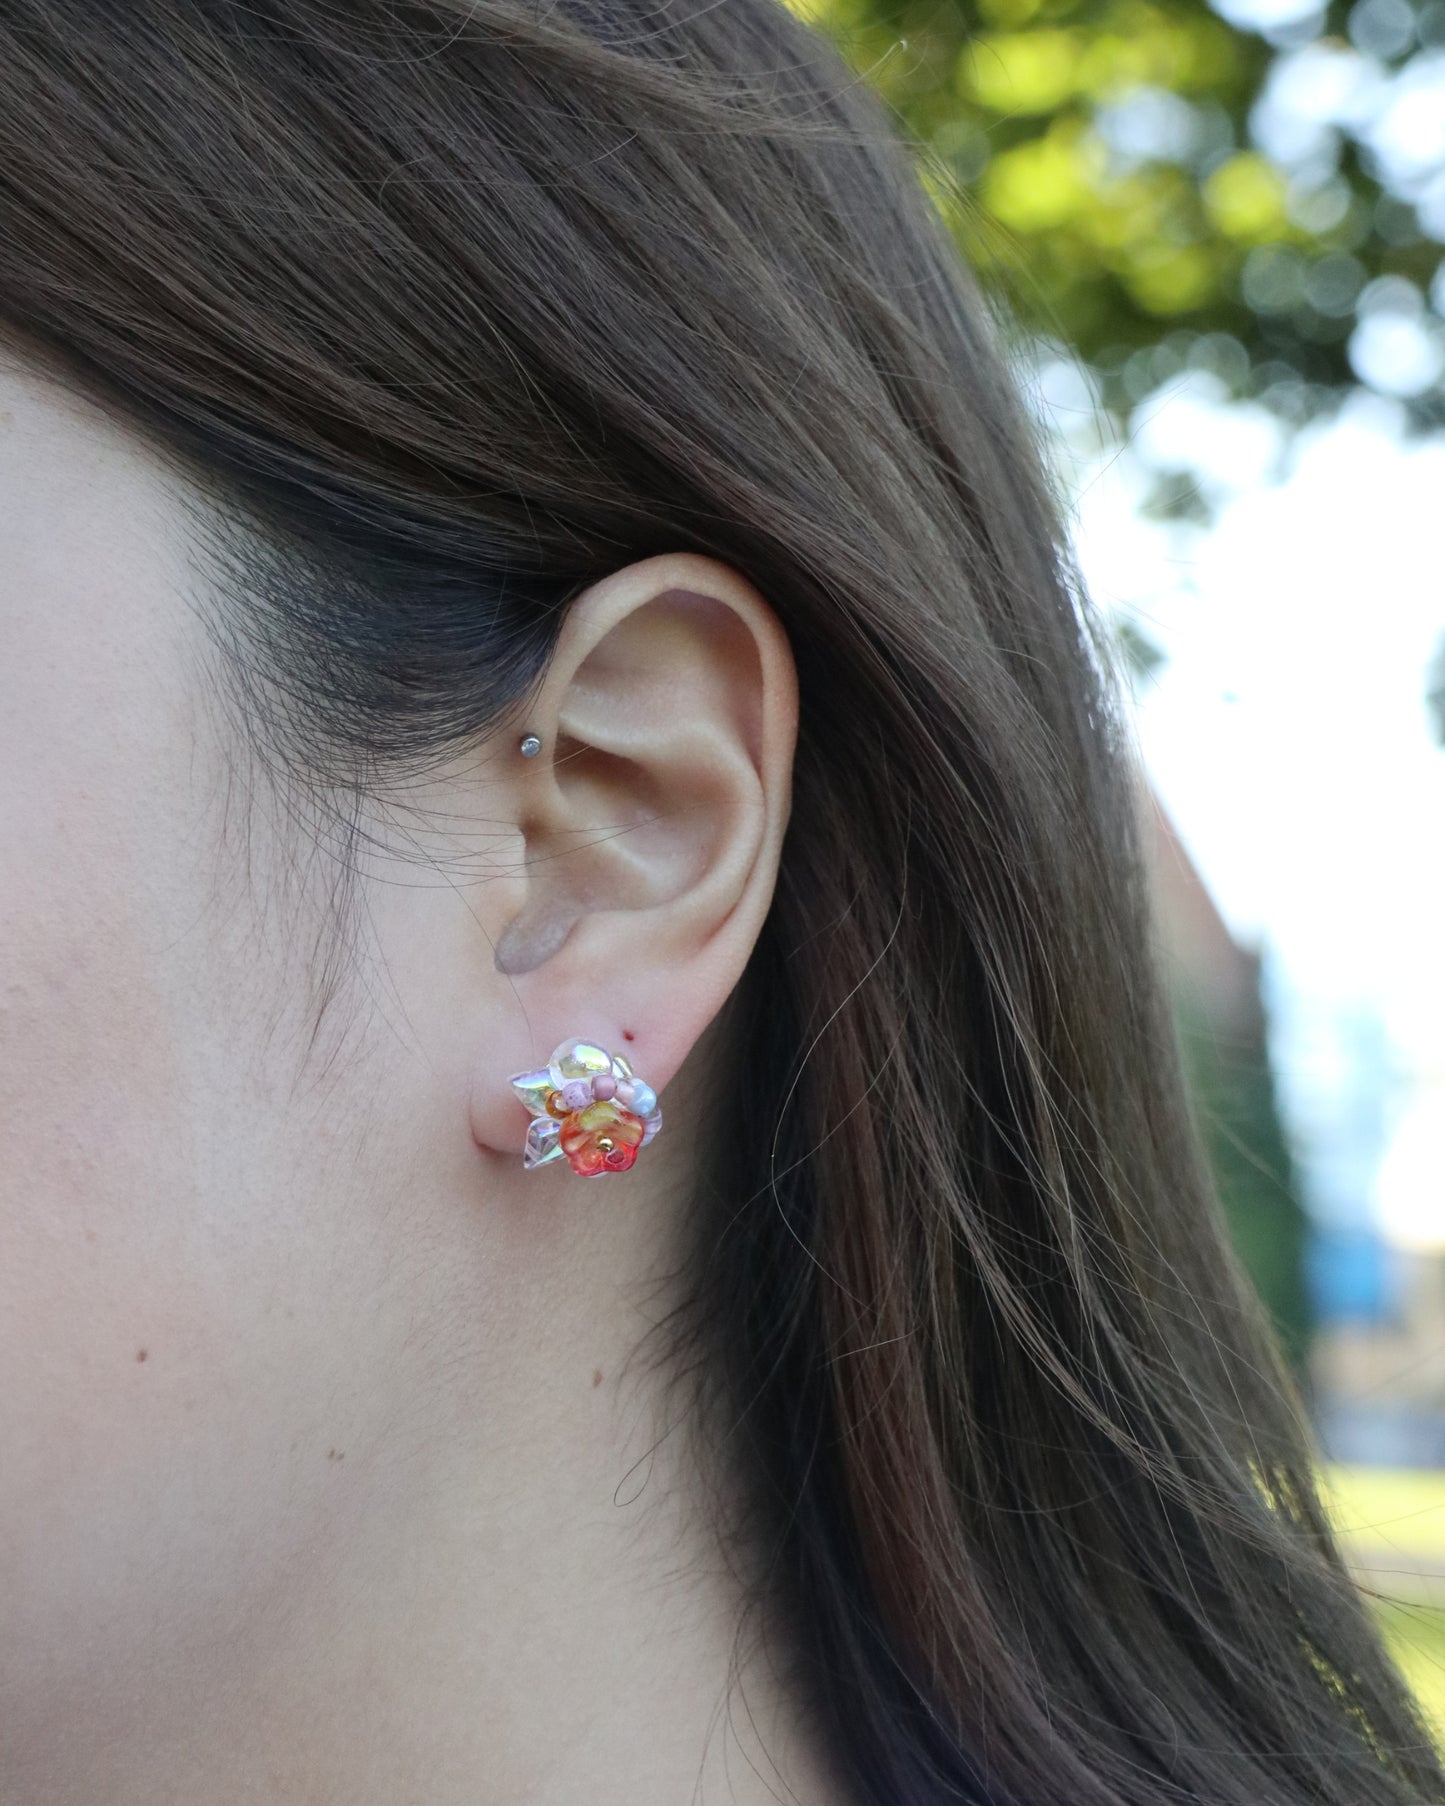 bloom flower stud earrings worn on ear